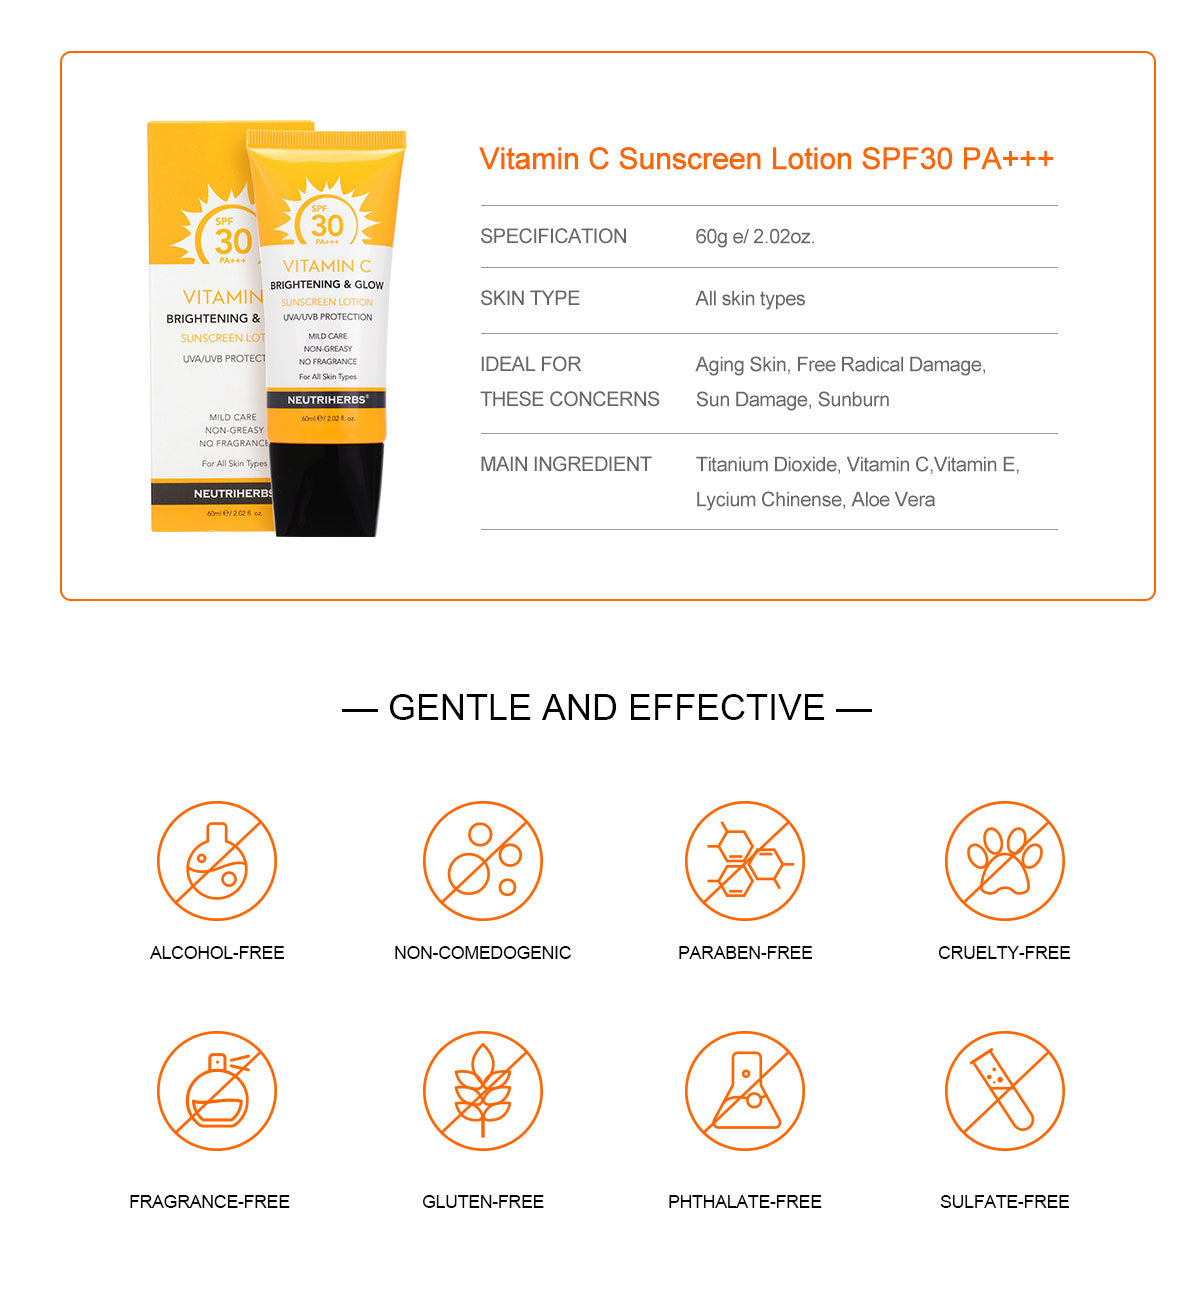 Private Label Sunscreen Wholesale Distributors SPF 30 Vitamin C Sunscreen Lotion